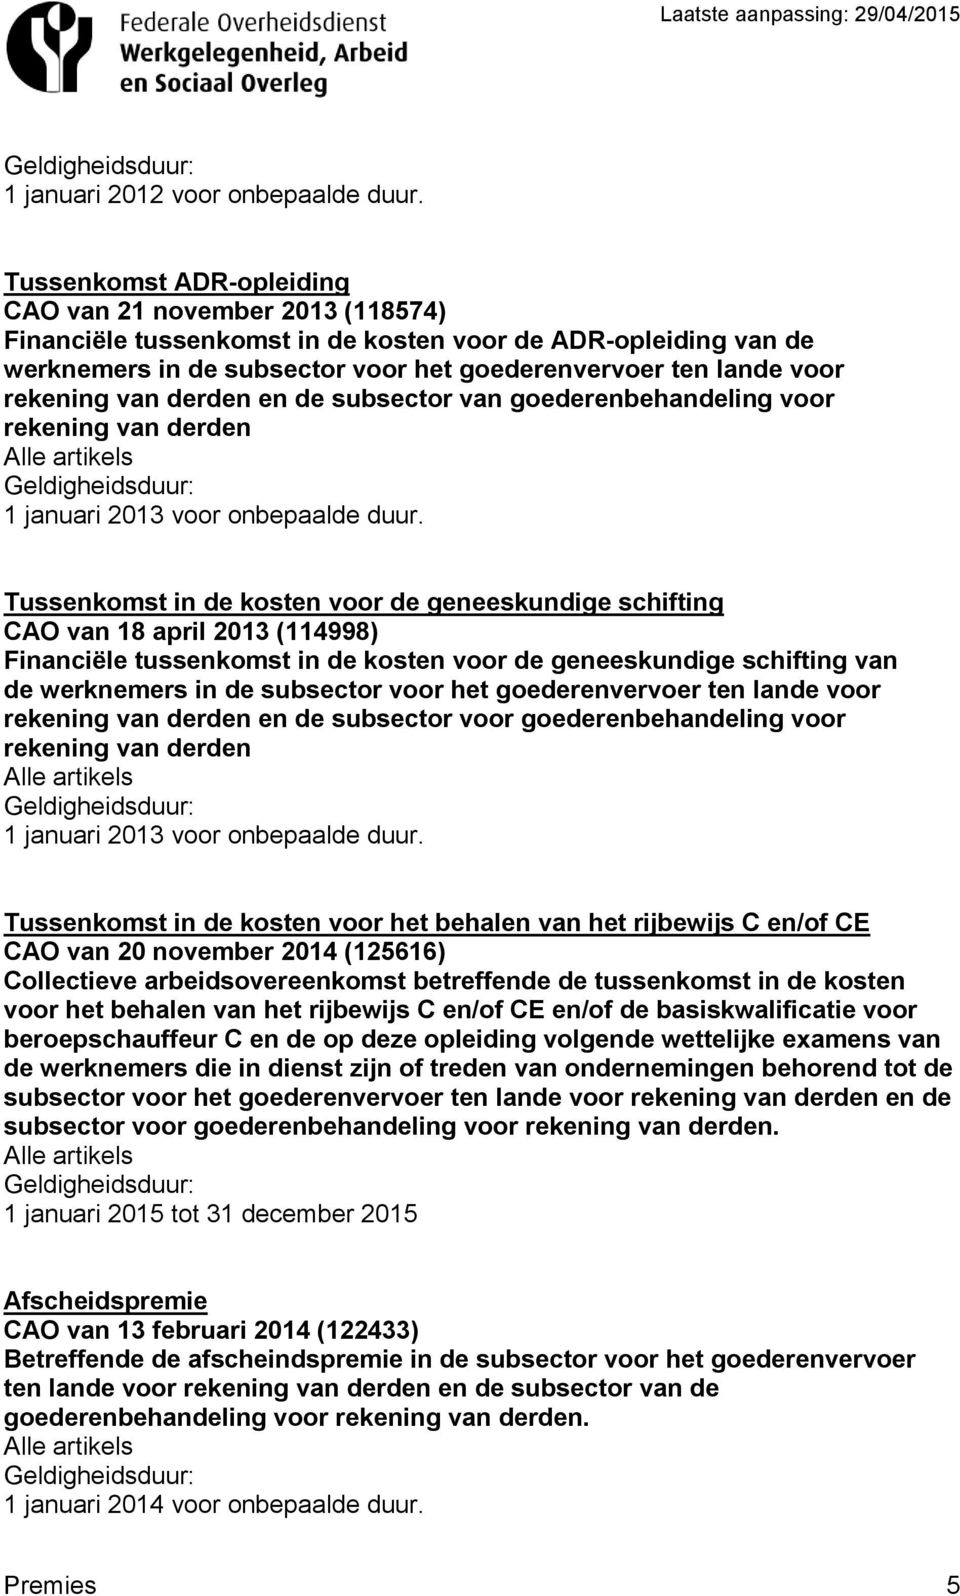 subsector van goederenbehandeling voor 1 januari 2013 voor onbepaalde duur.